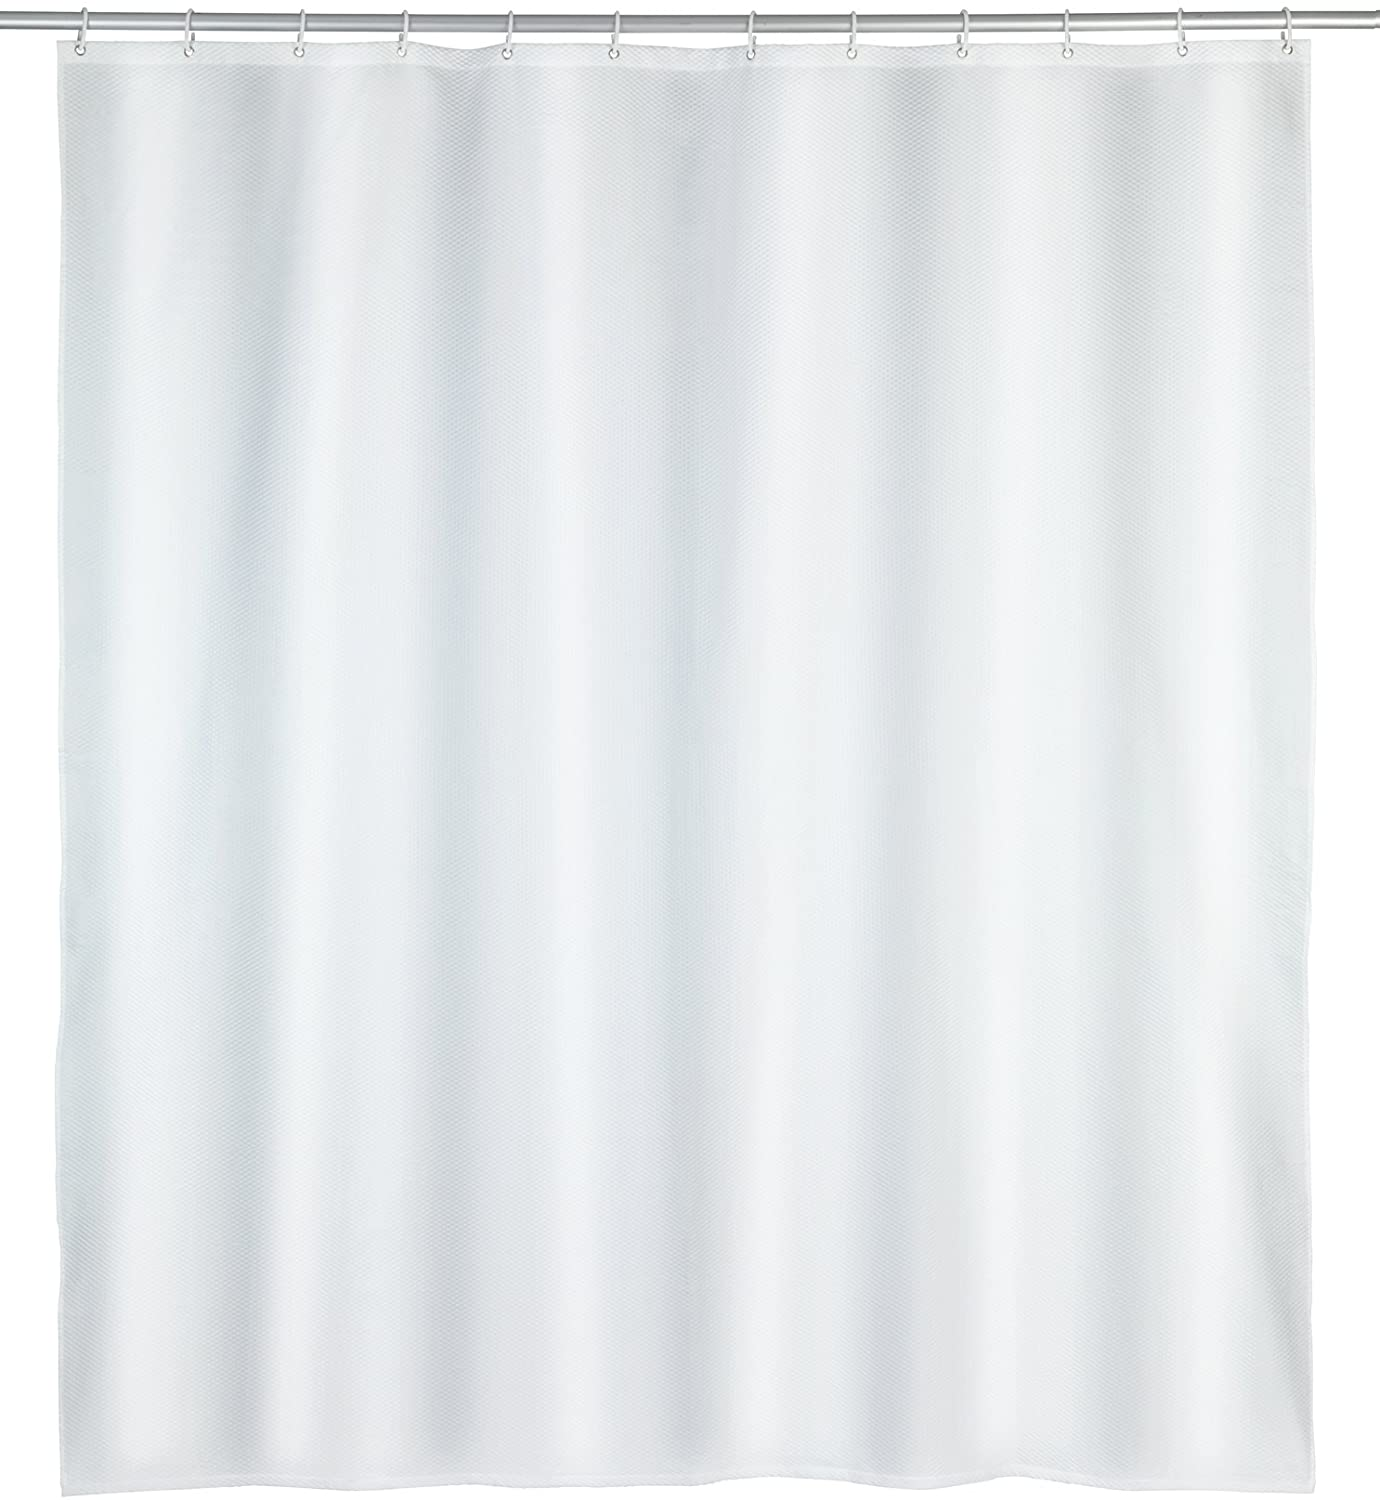 Duschvorhang Punto Weiß - Textil , waschbar, wasserabweisend, mit 12 Duschvorhangringen, Polyester, 180 x 200 cm, Weiß